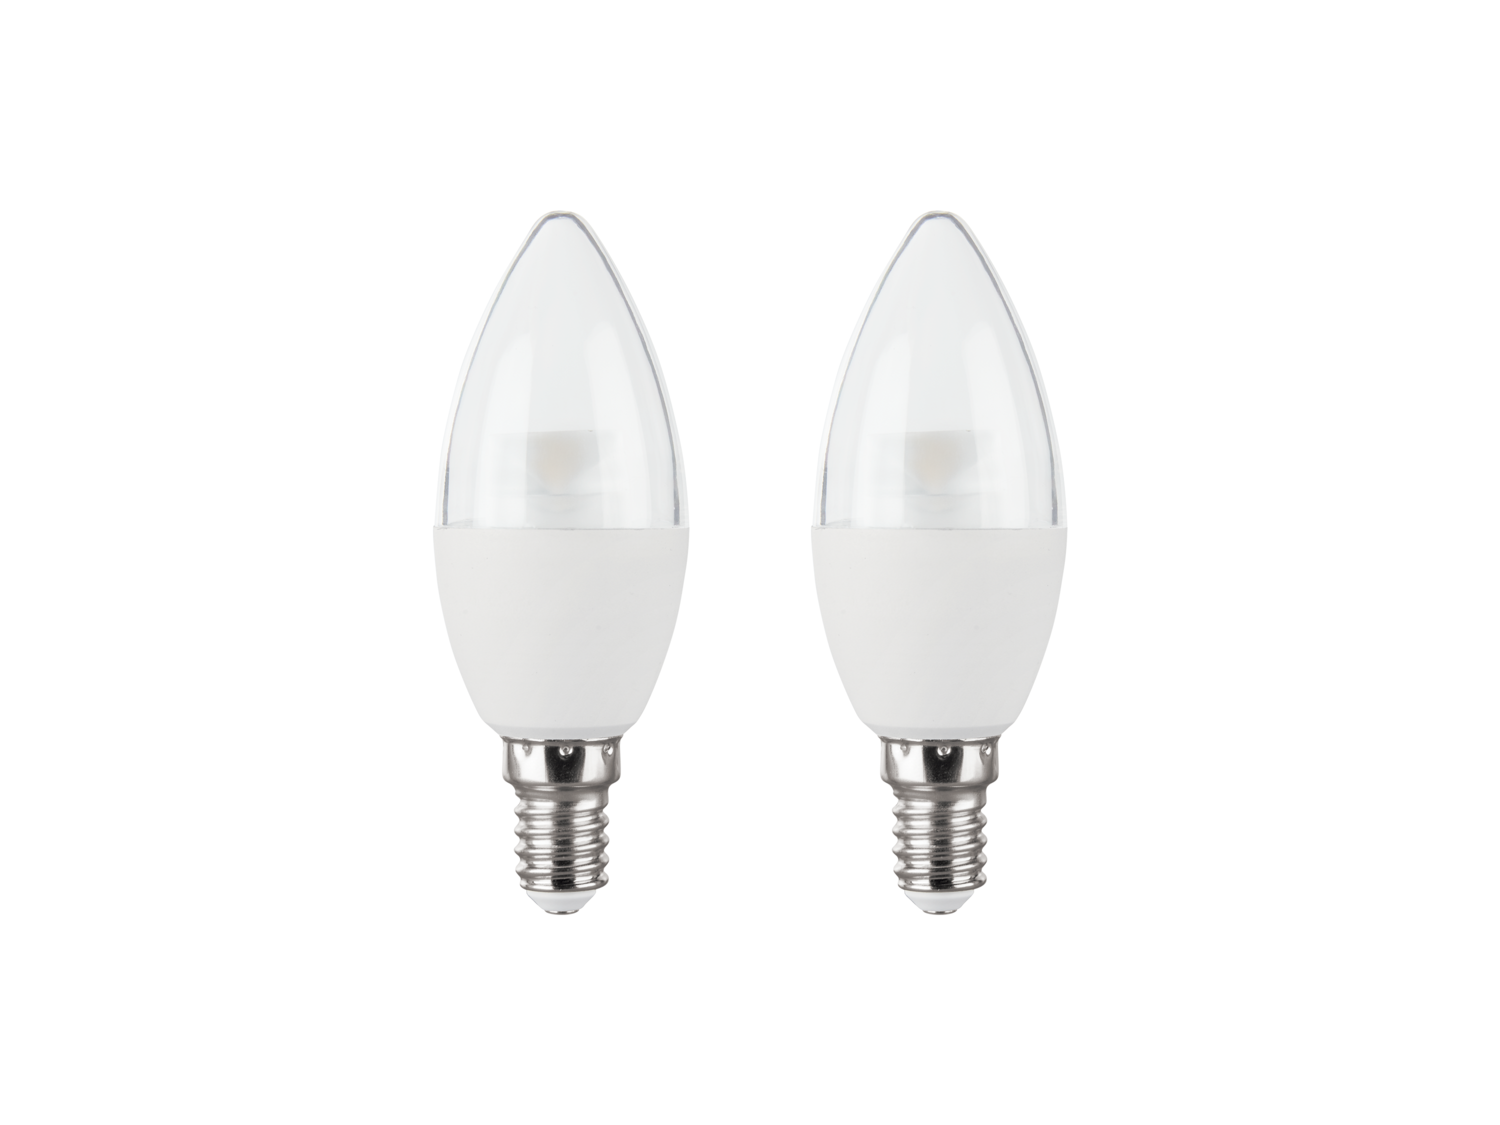 Ampoules LED , le prix 2.99 € 
- Au choix : E27, 10 W, 806 lm ou E27, 6W, 420 ...